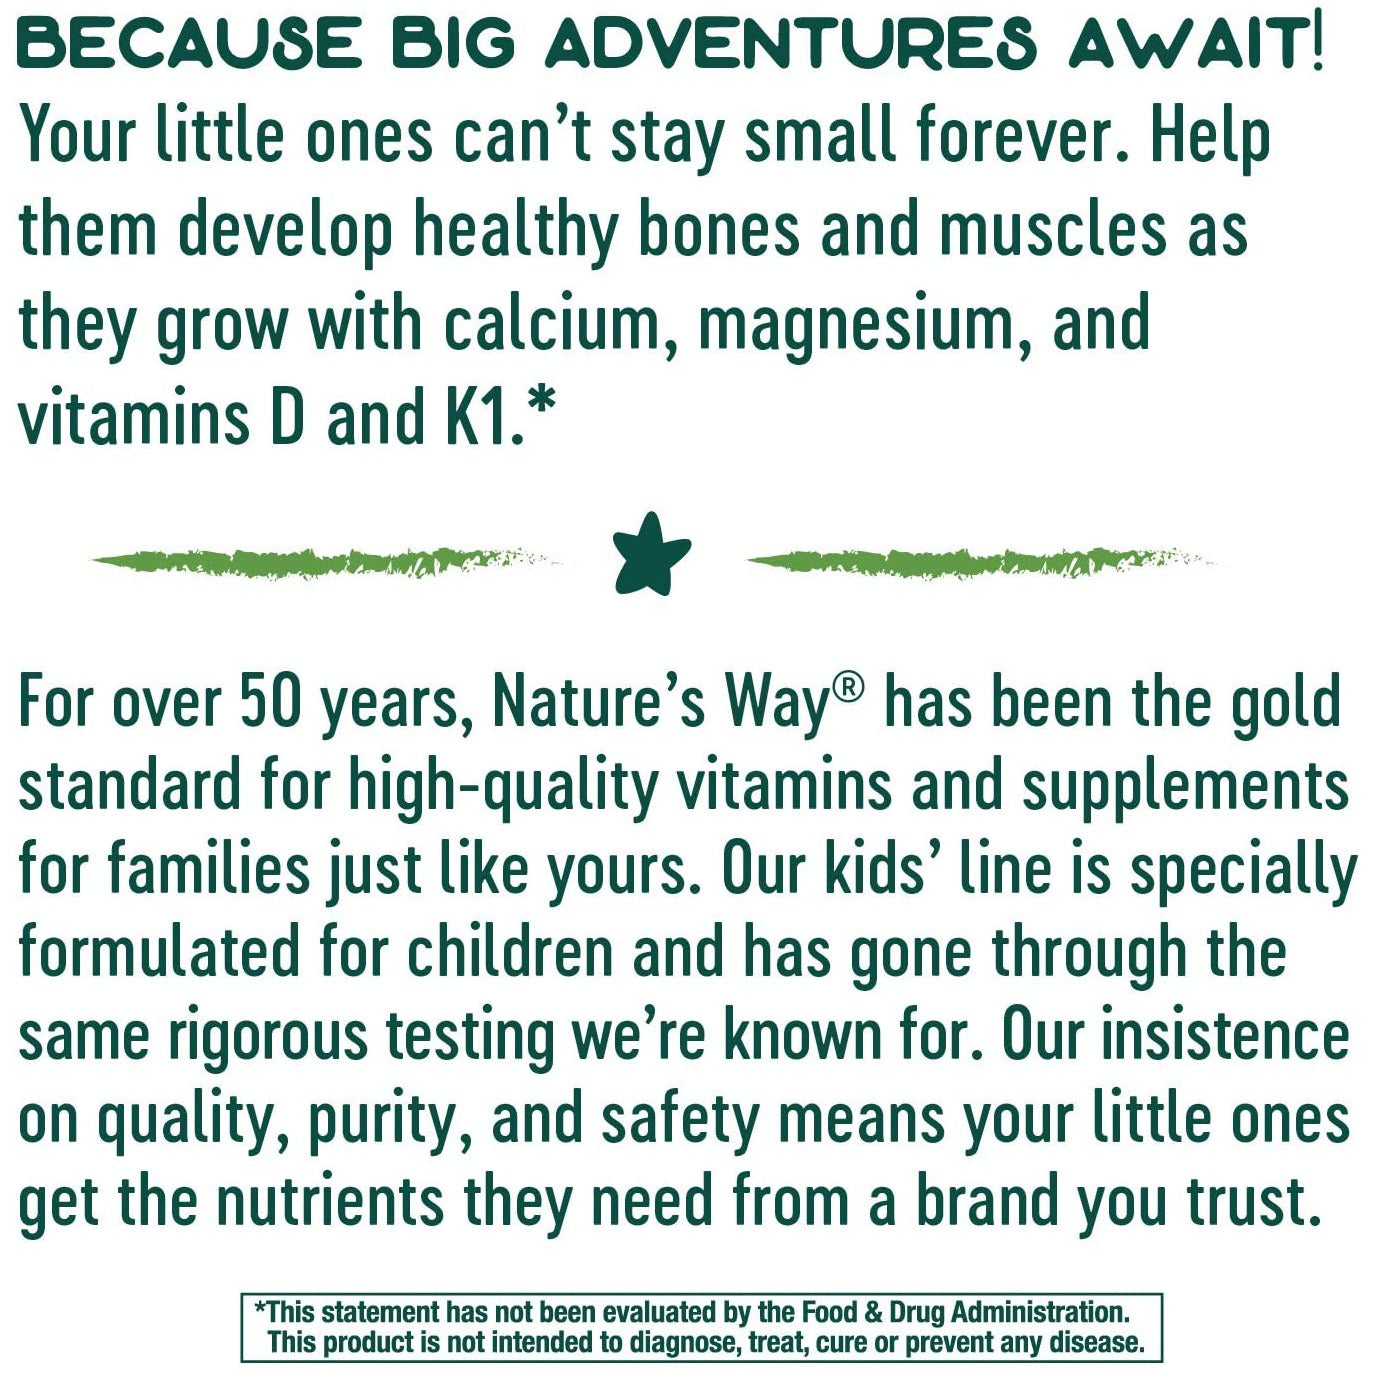 Nature’s Way Kids Growing Bones & Muscles, Calcium & Vitamin D